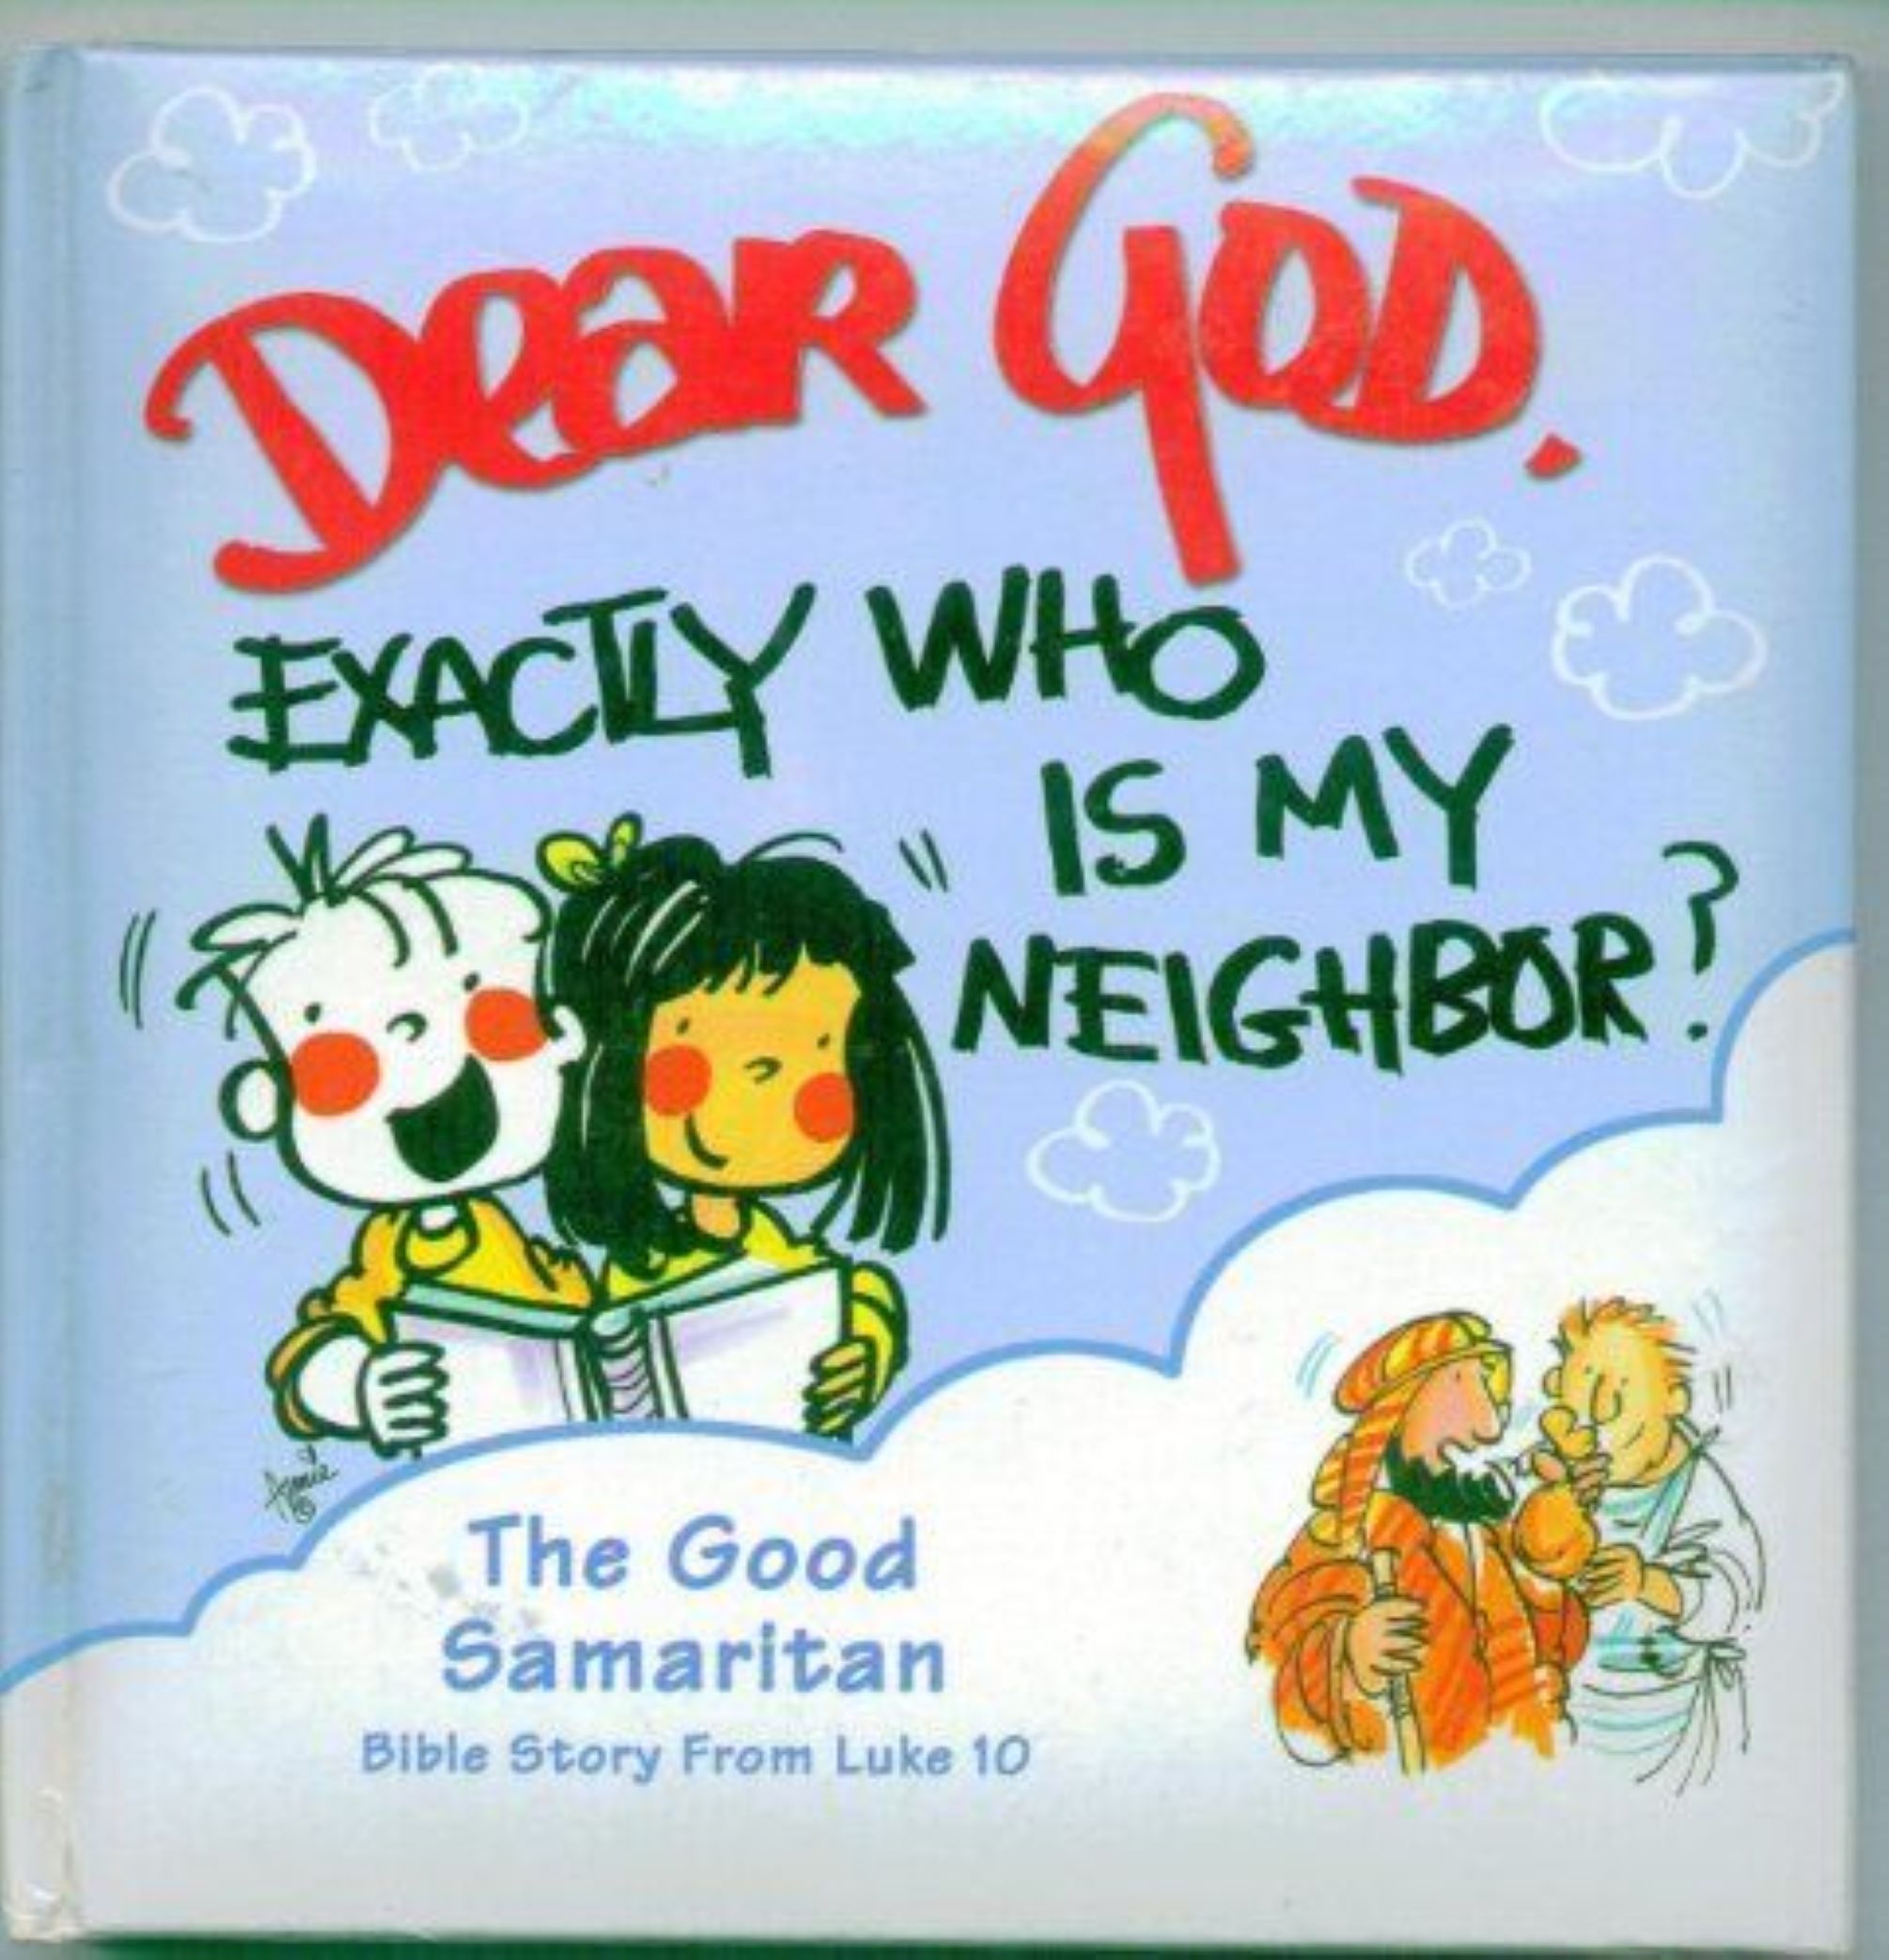 Dear God, Exactly Who is my Neighbor?